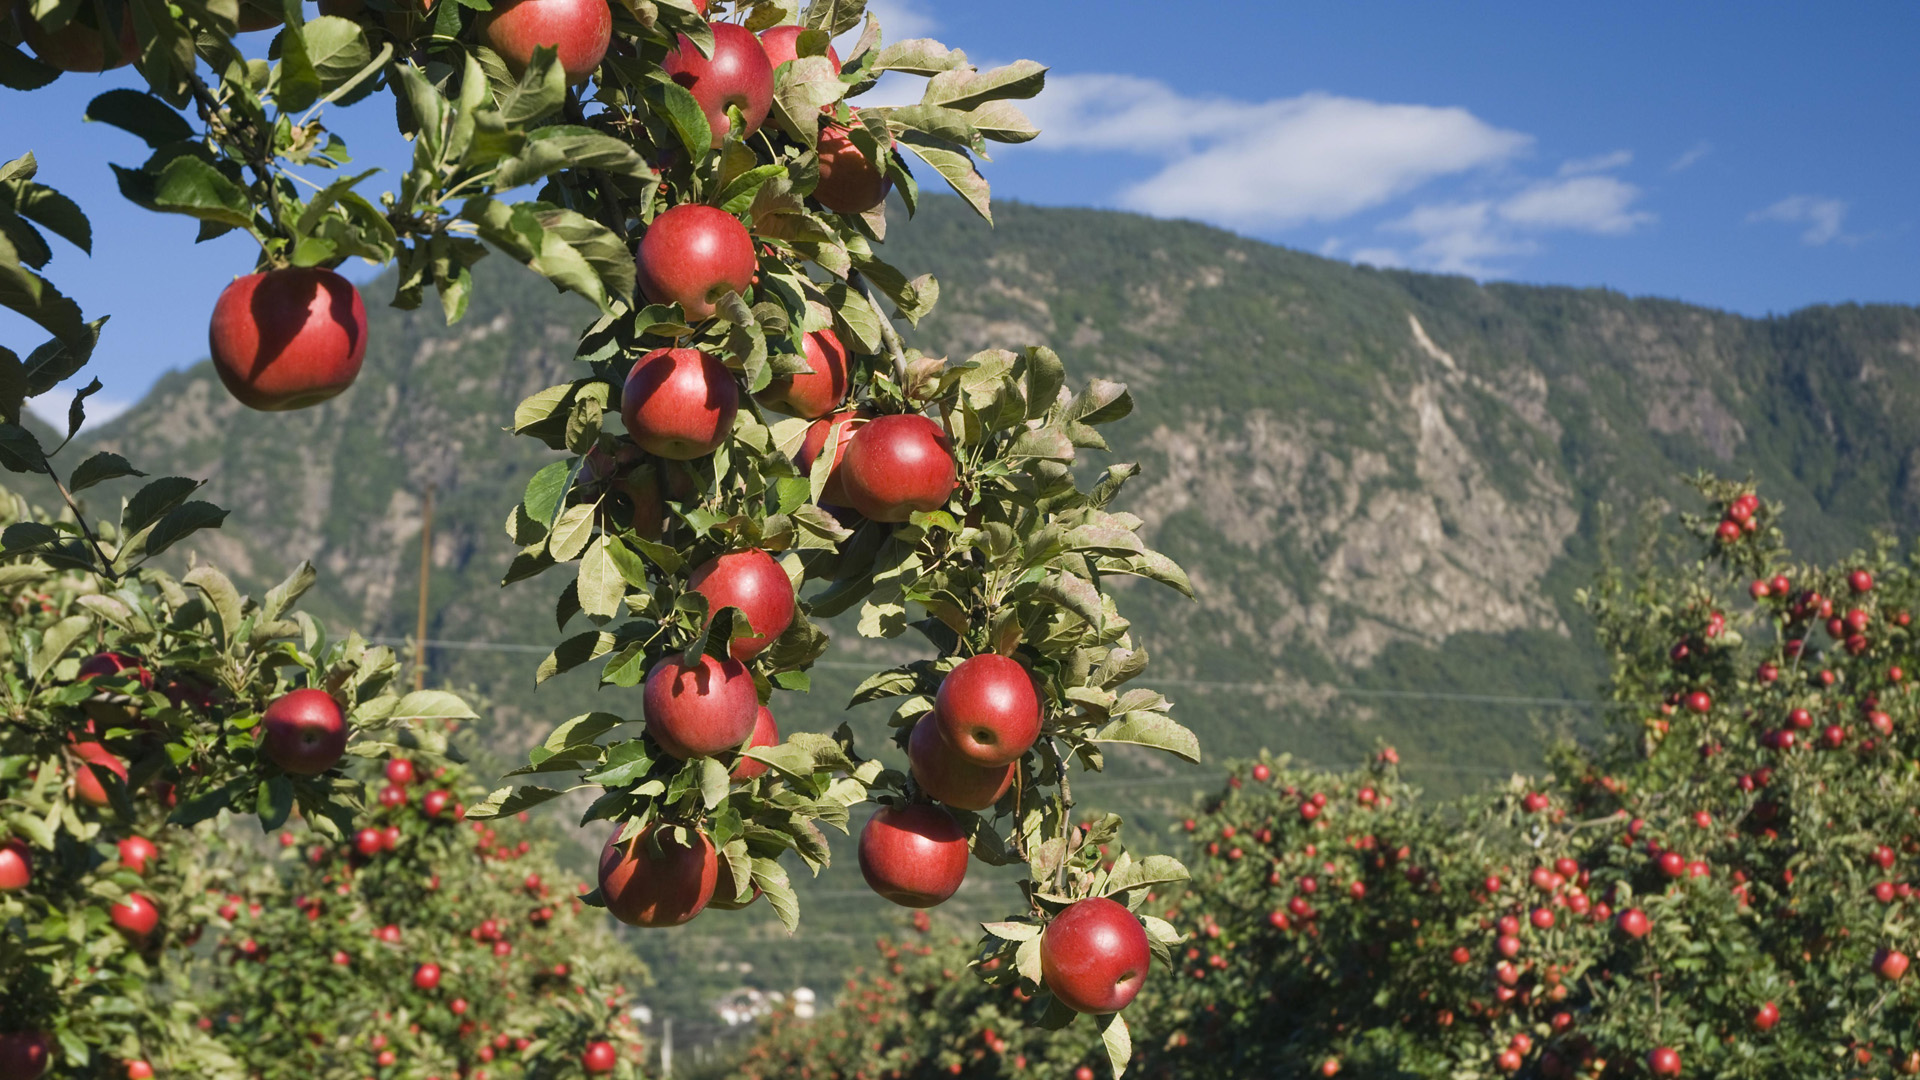 Apfelplantage in Südtirol | picture alliance / imageBROKER